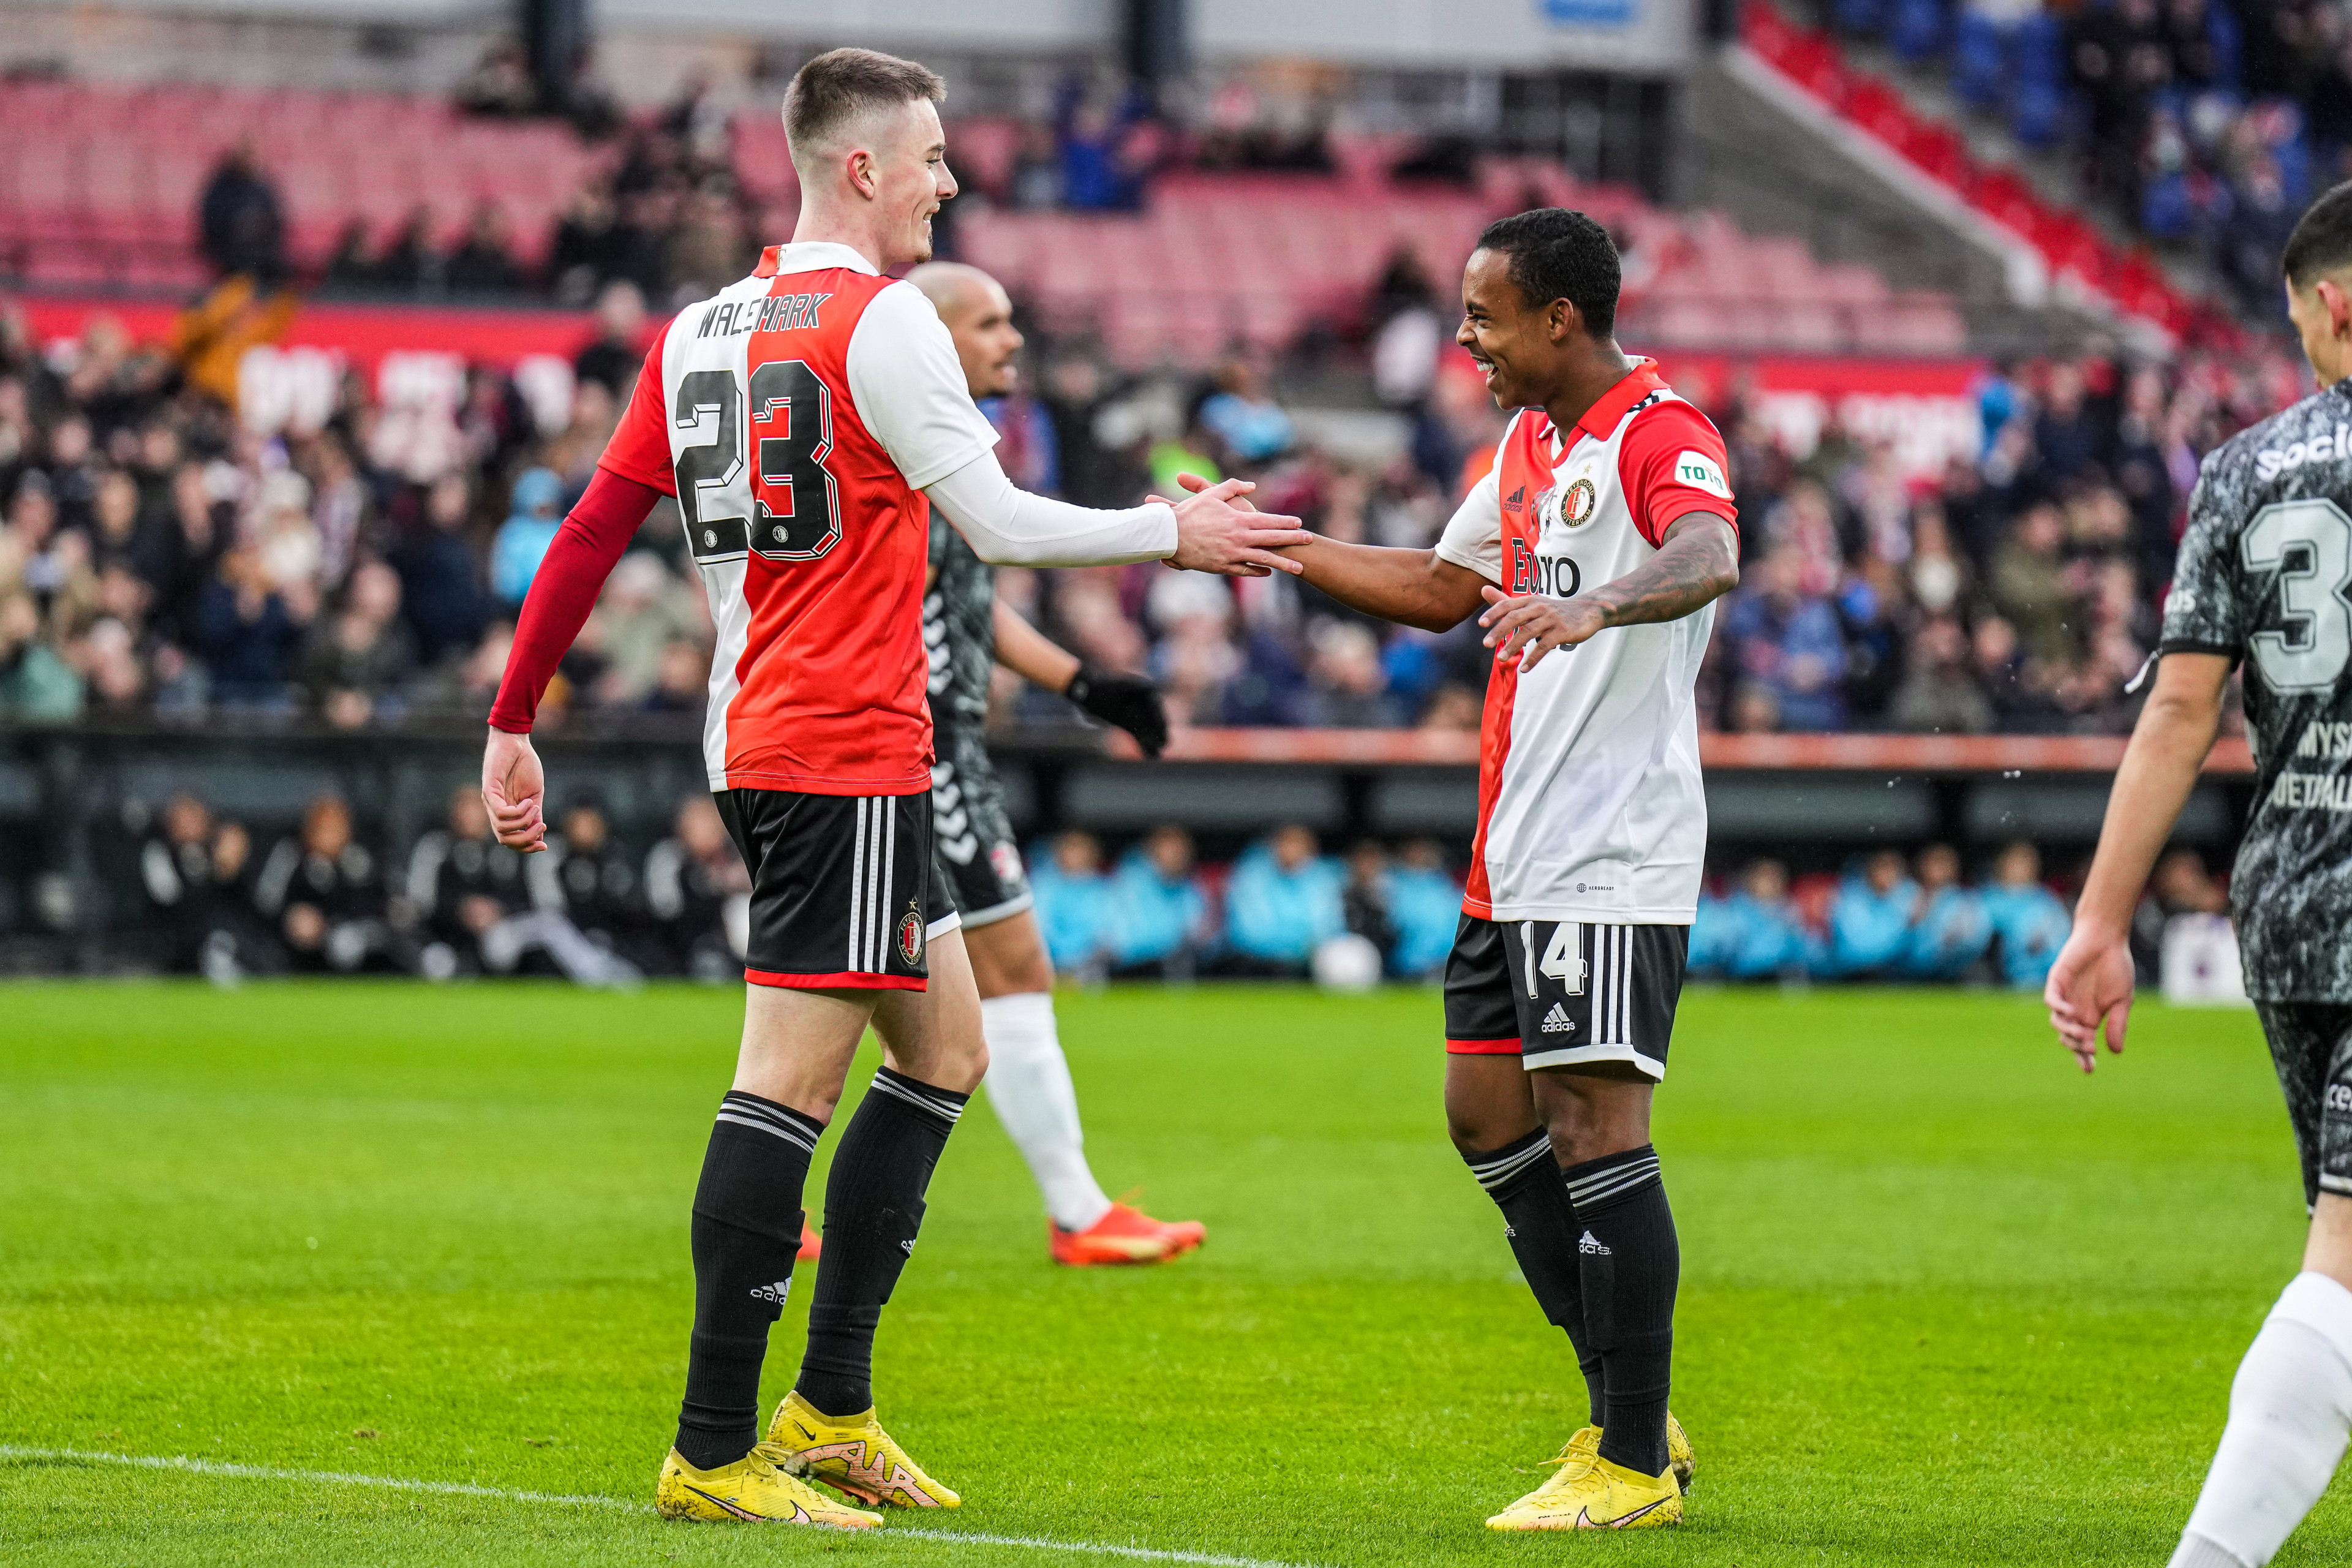 Feyenoord - FC Emmen • 5 - 0 [FT]